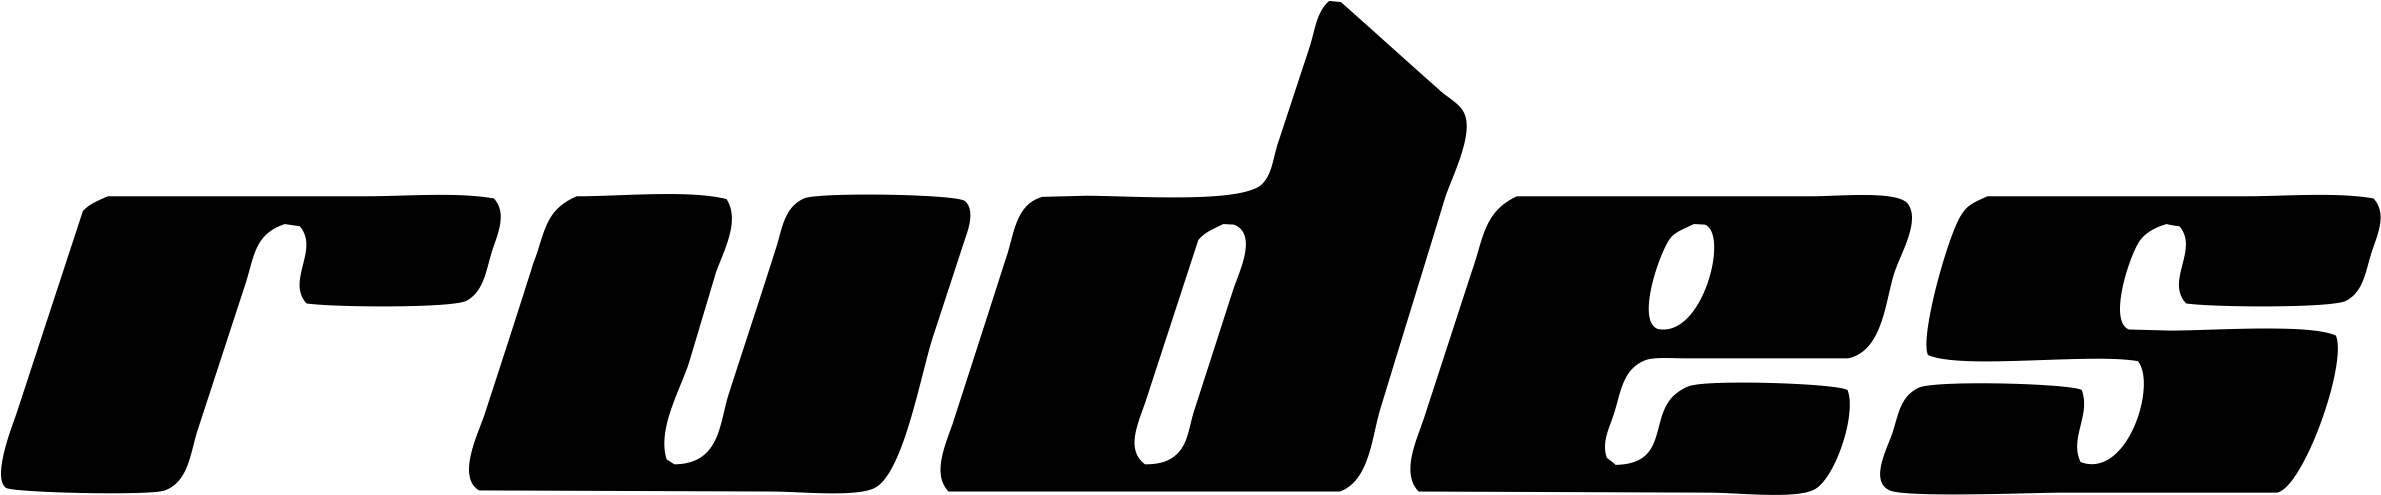 логотип rudes_logo